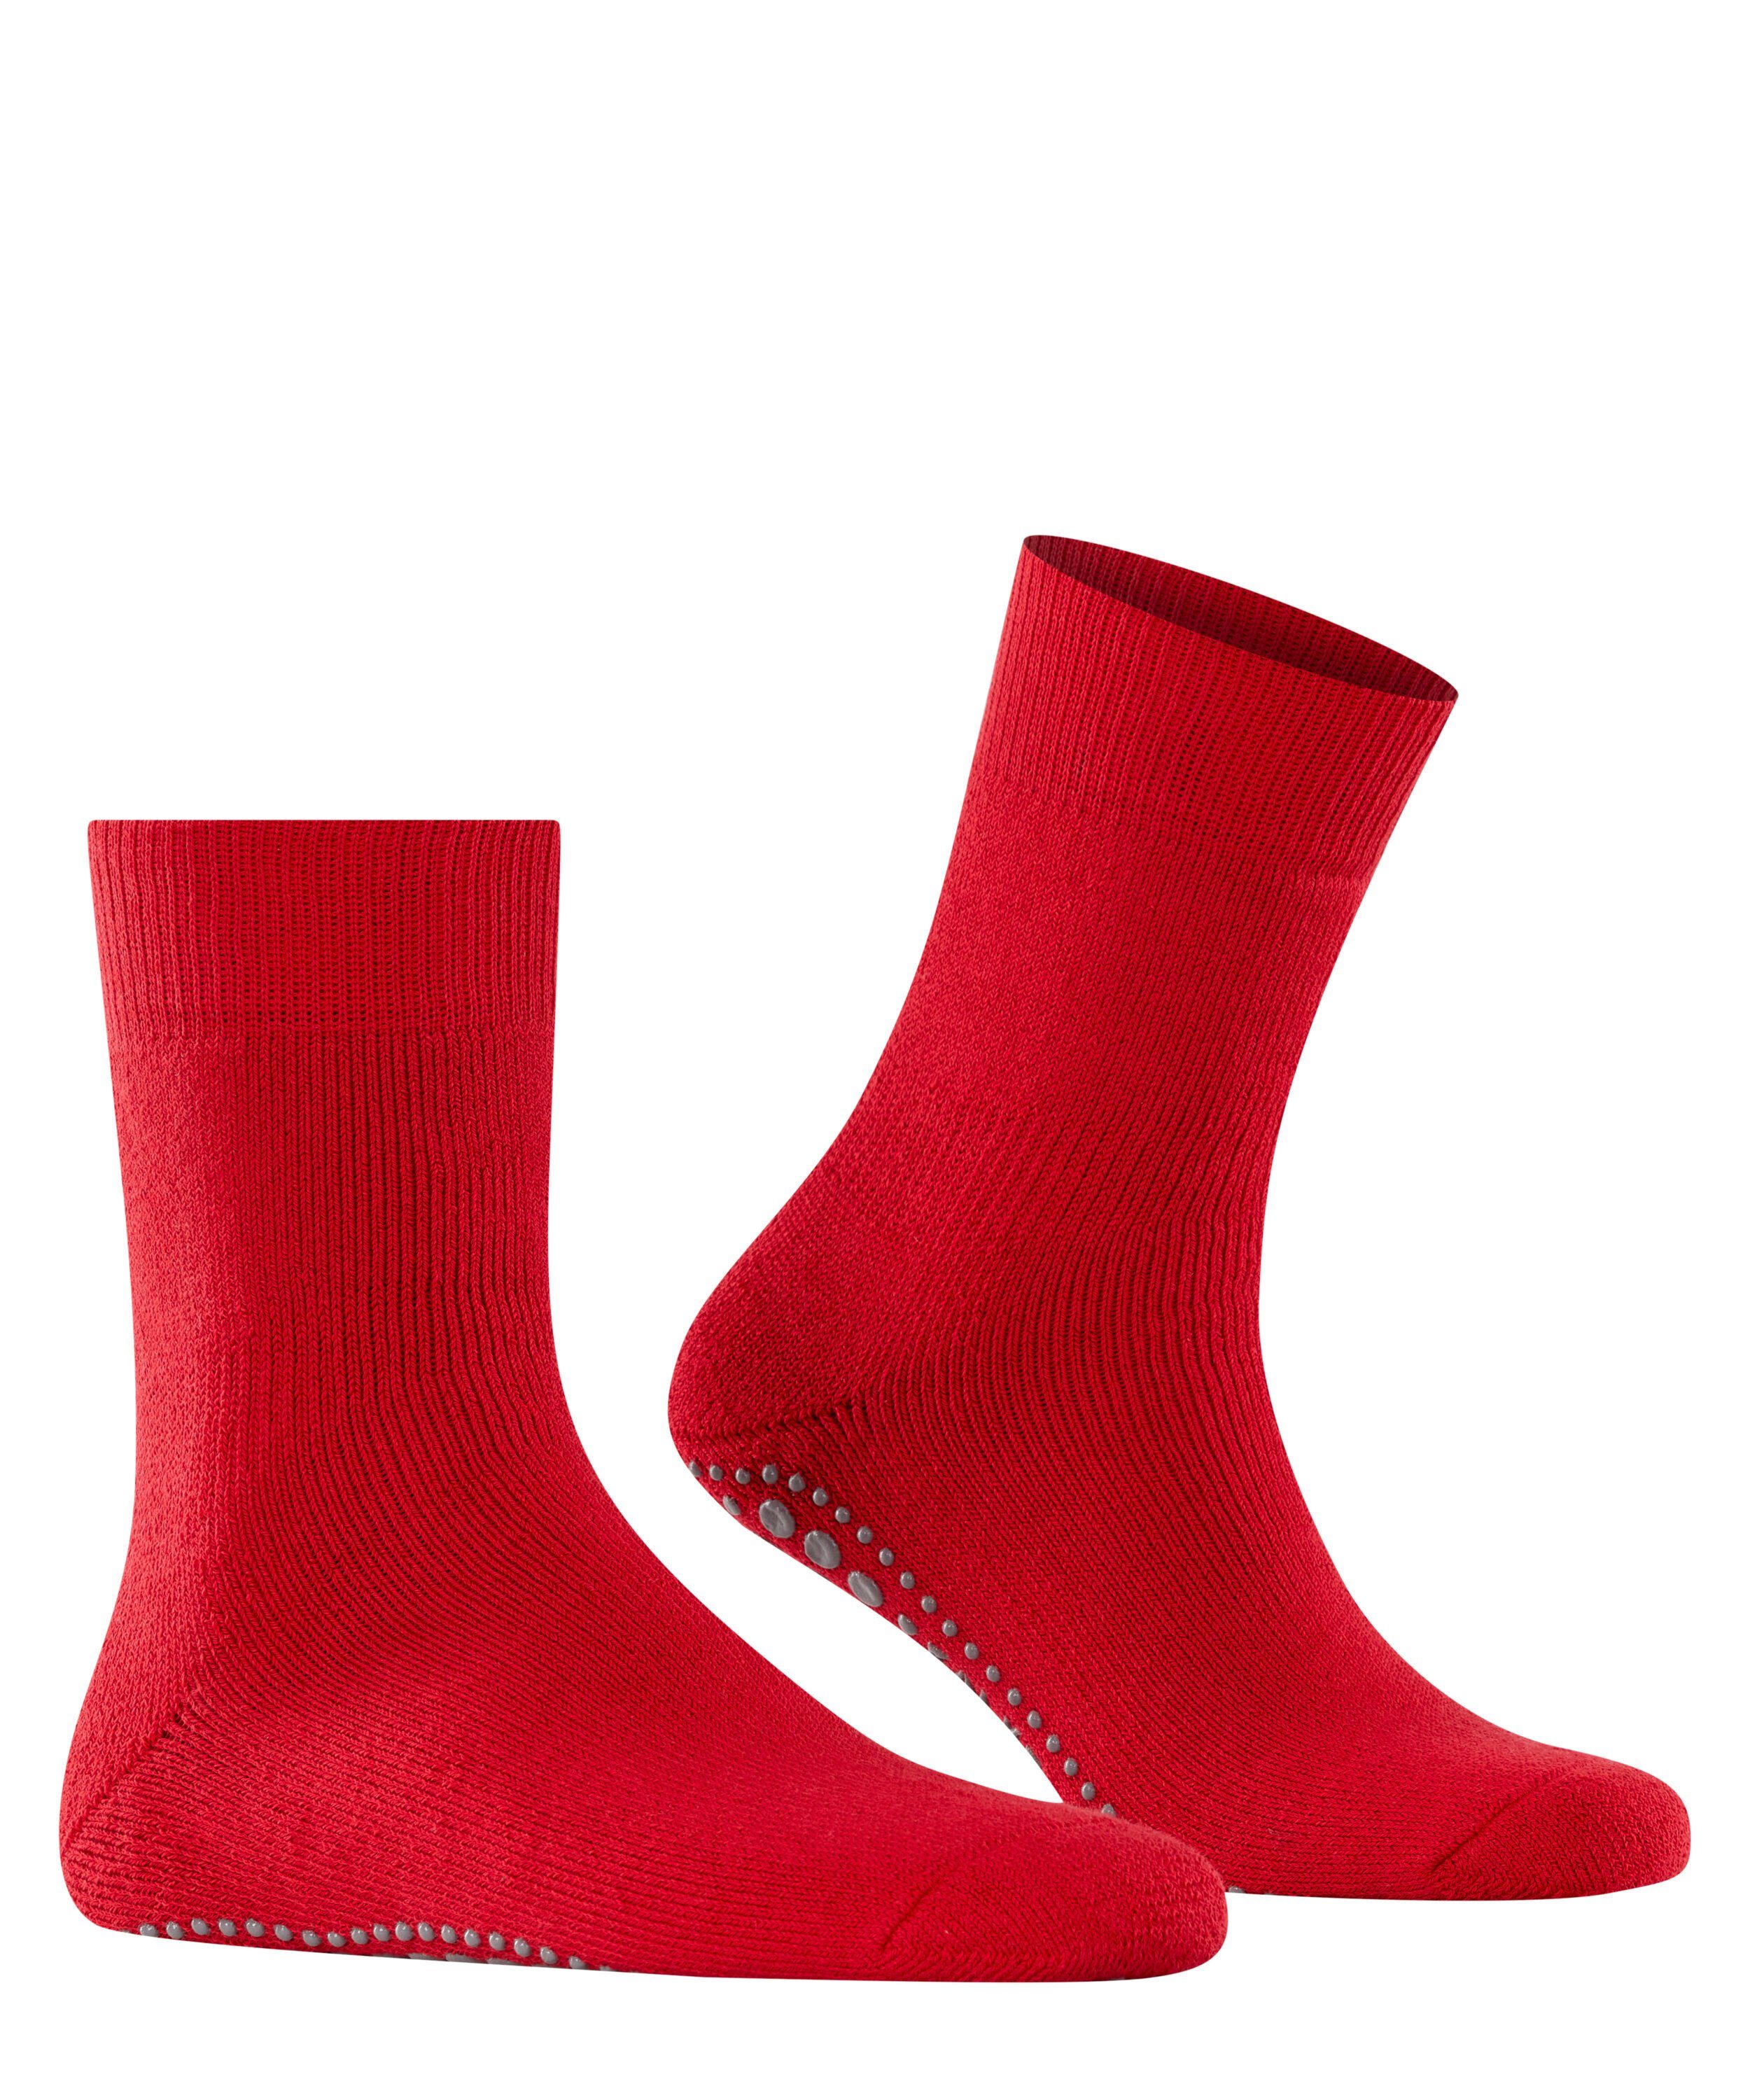 Socken (8280) (1-Paar) Homepads FALKE scarlet